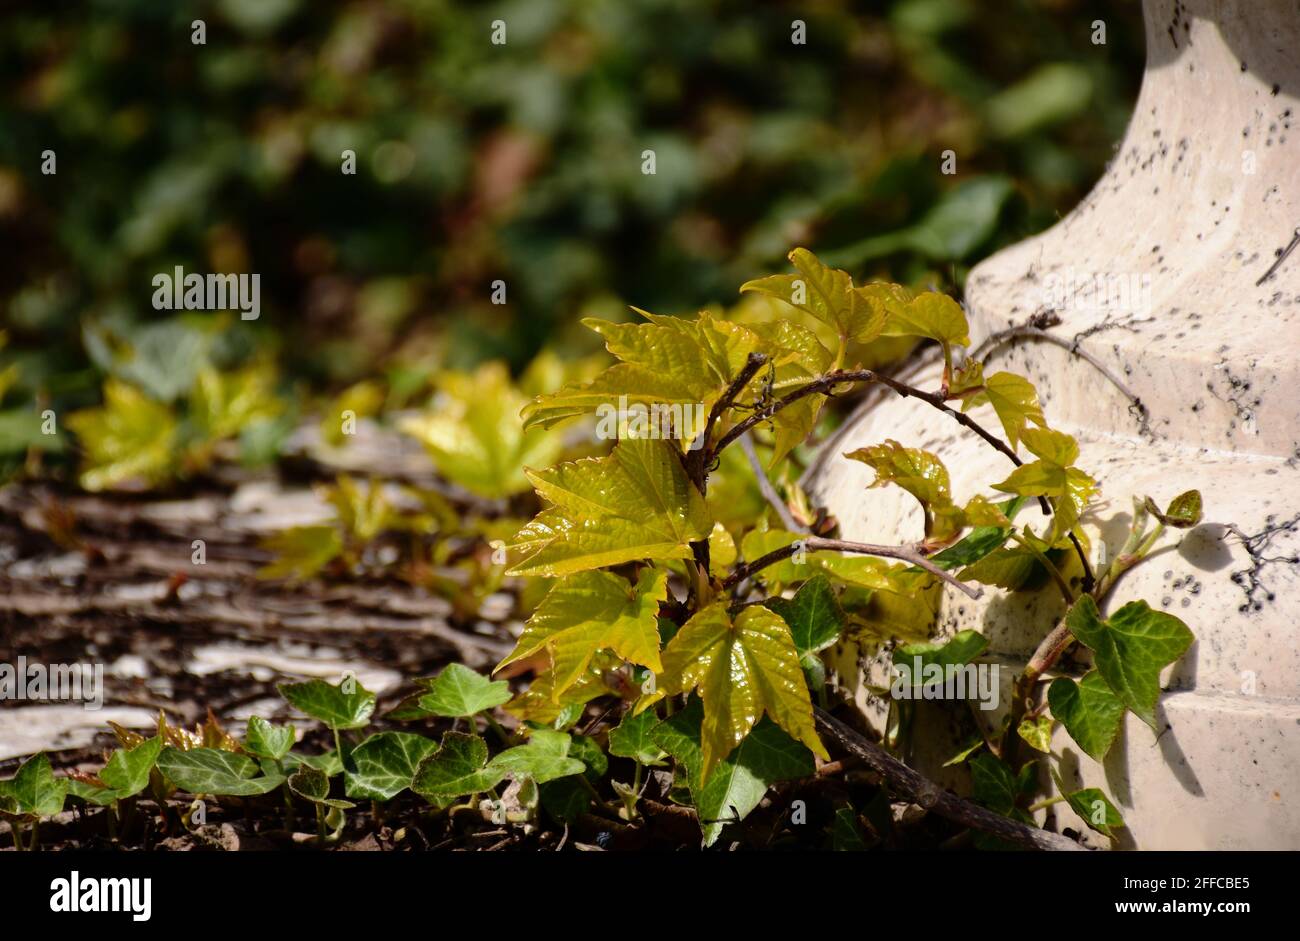 Dekorative gelbe und grüne Efeu- und Rebbergsteiger-Pflanzen auf beigefarbener Steinoberfläche. Dichtes grünes Laub. Frische Frühlingsszene. Verschwommener grüner Hintergrund. Stockfoto